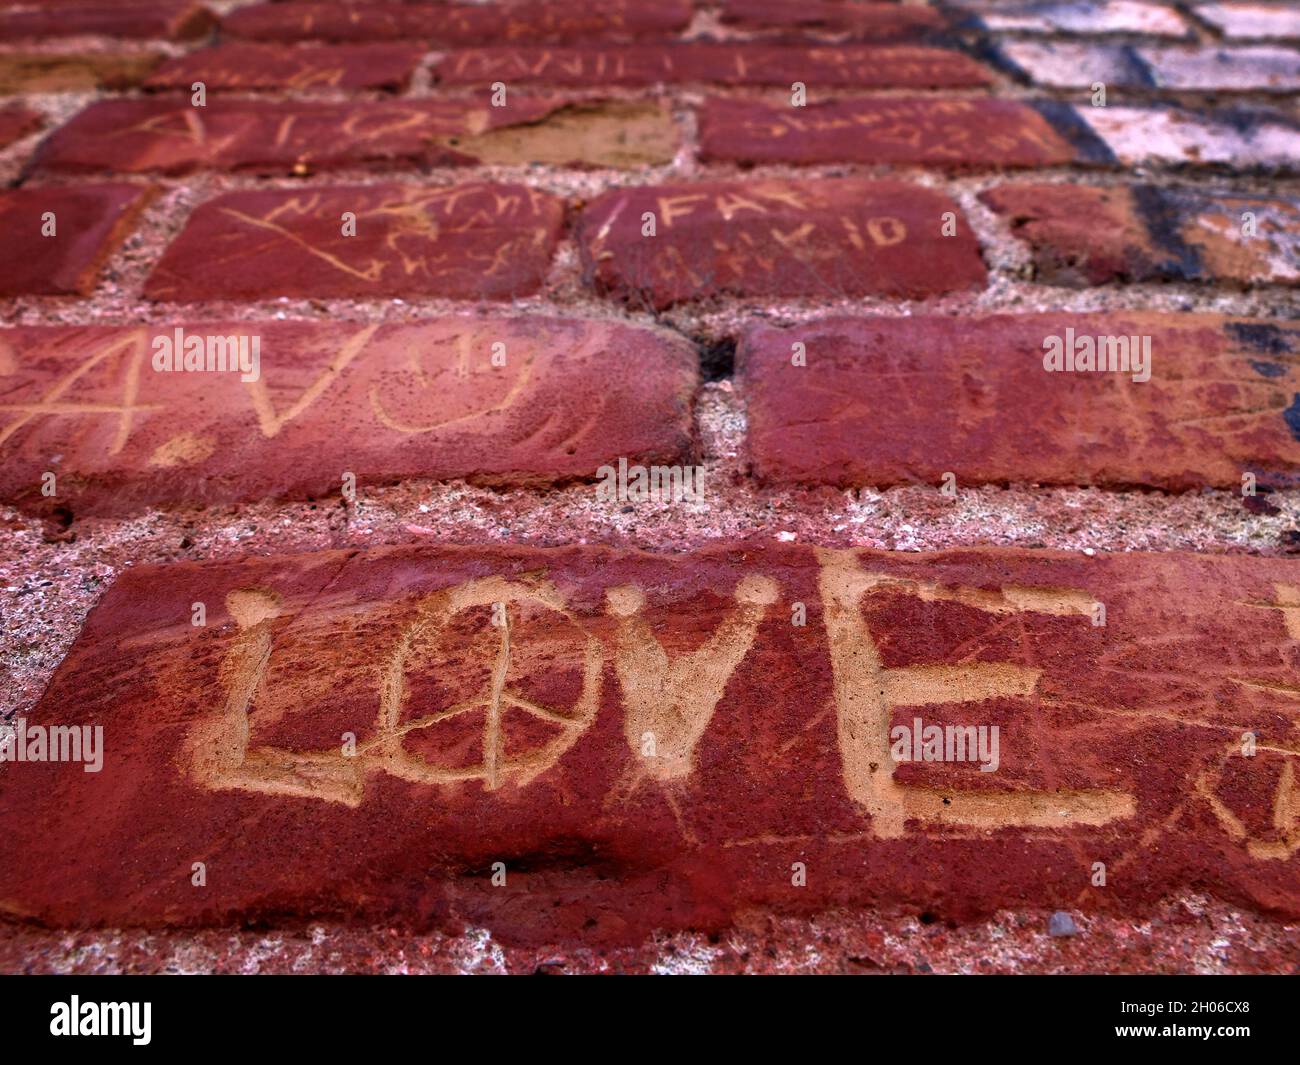 Dettaglio del vecchio muro di mattoni rossi con le parole nomi e l'amore graffiato o scolpito in Foto Stock